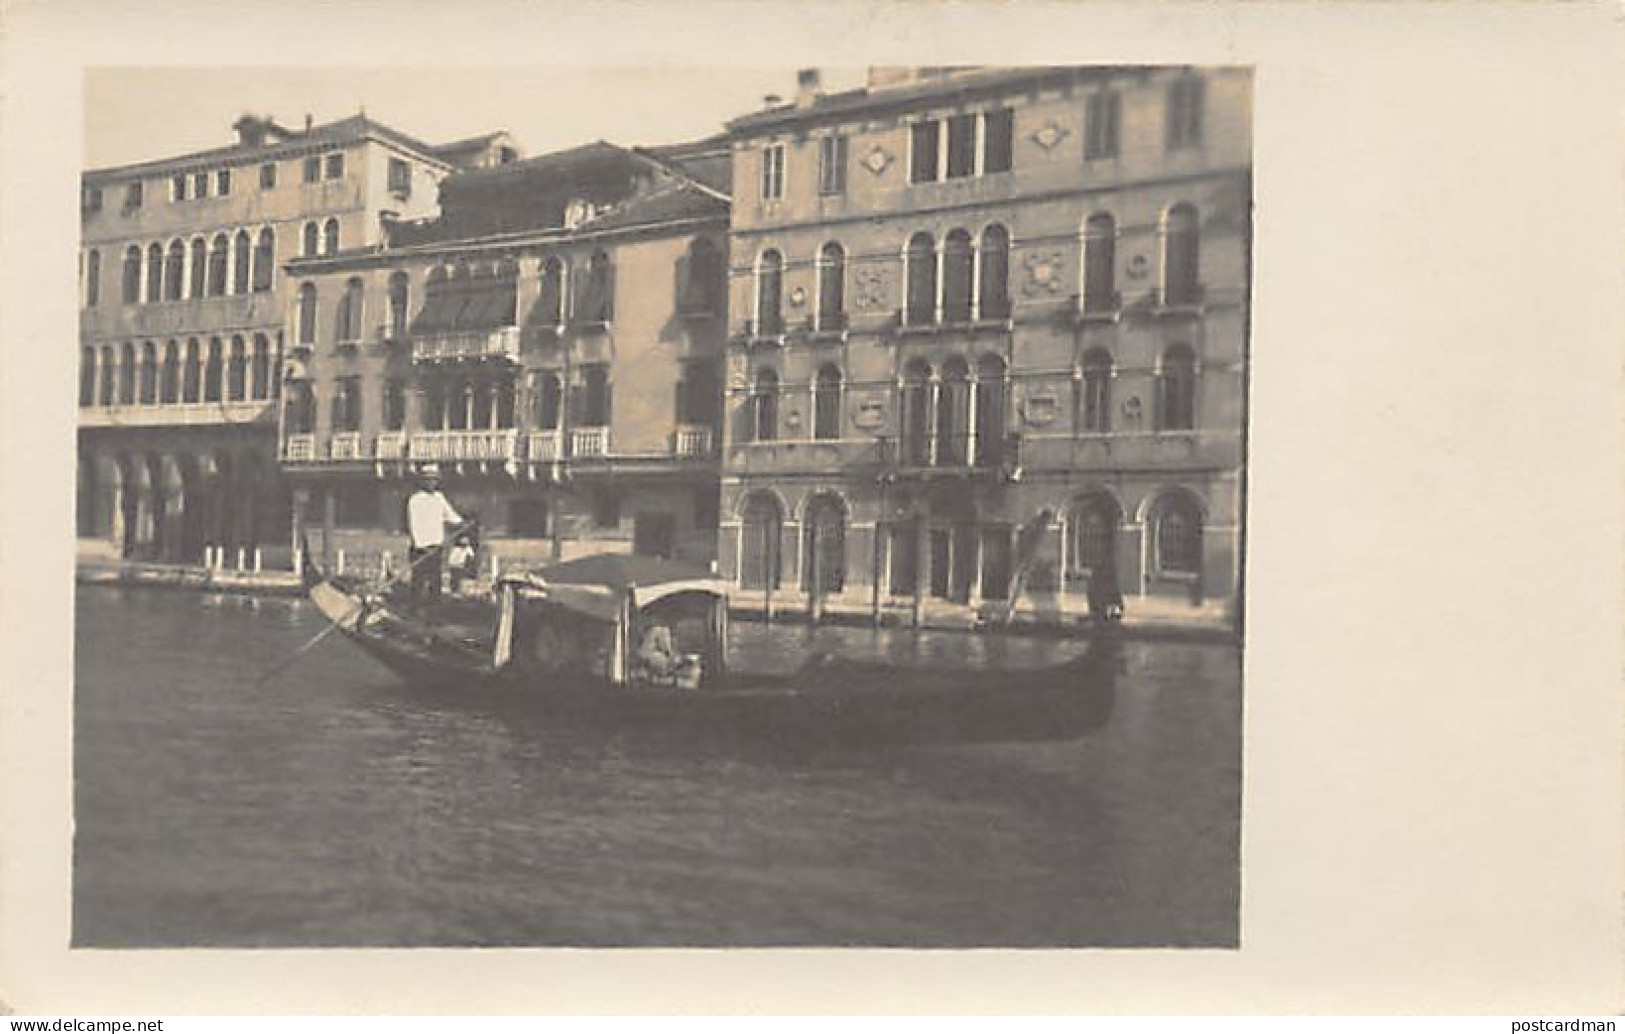 Italia - VENEZIA - Gondola Sul Canal Grande - CARTOLINE FOTO - Venezia (Venice)